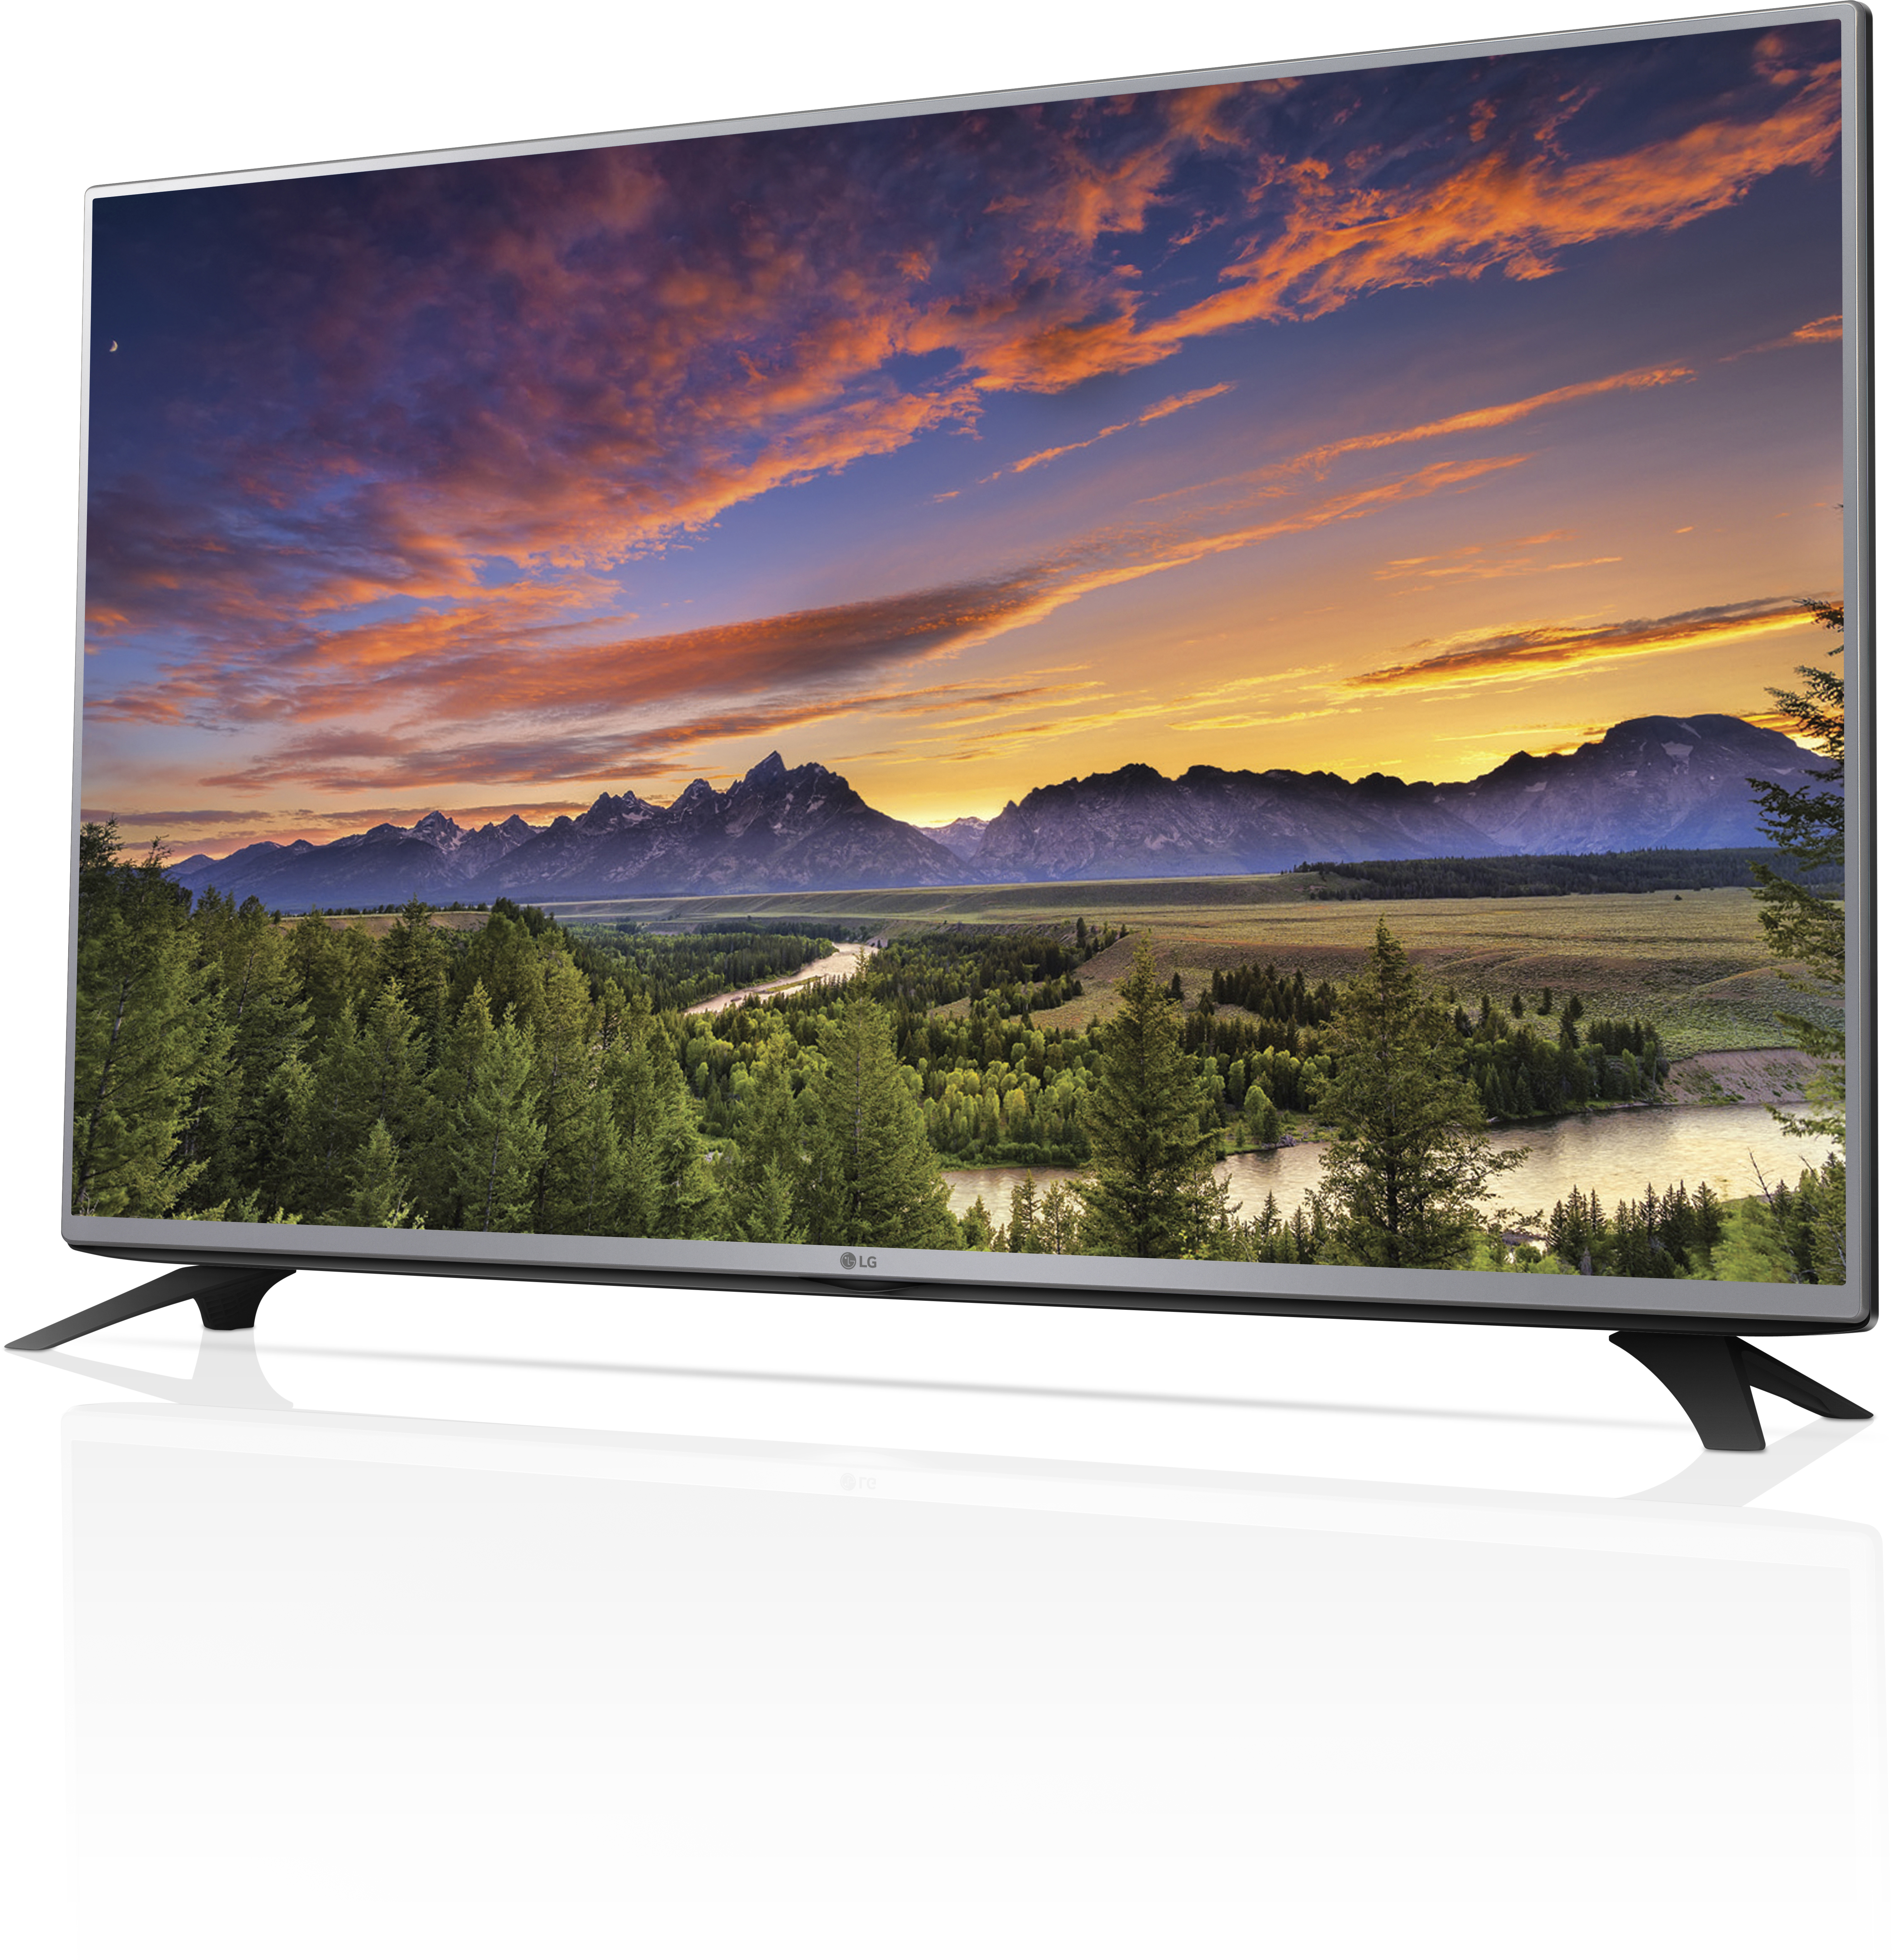 Телевизор купить минск цена. LG 32lf551c. LG 32lf562u. LG 32lf510u. LG 32lf560u.